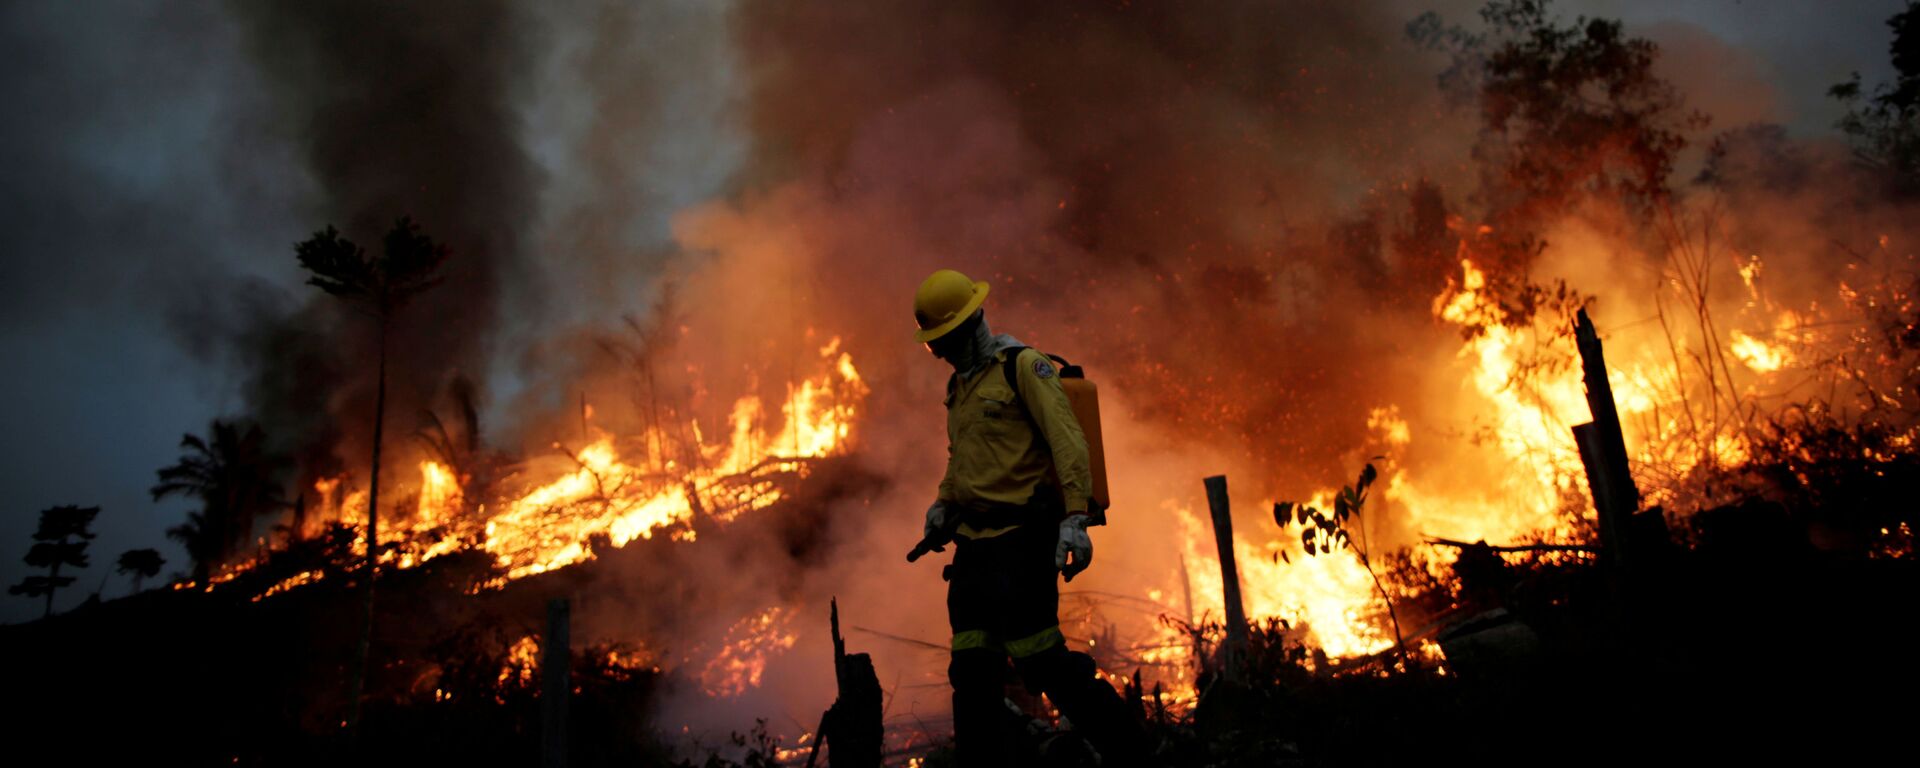 Membros da brigada contra incêndios do IBAMA tentam controlar chamas que consomem a floresta amazônica em Apuí, no Amazonas - Sputnik Brasil, 1920, 12.08.2020